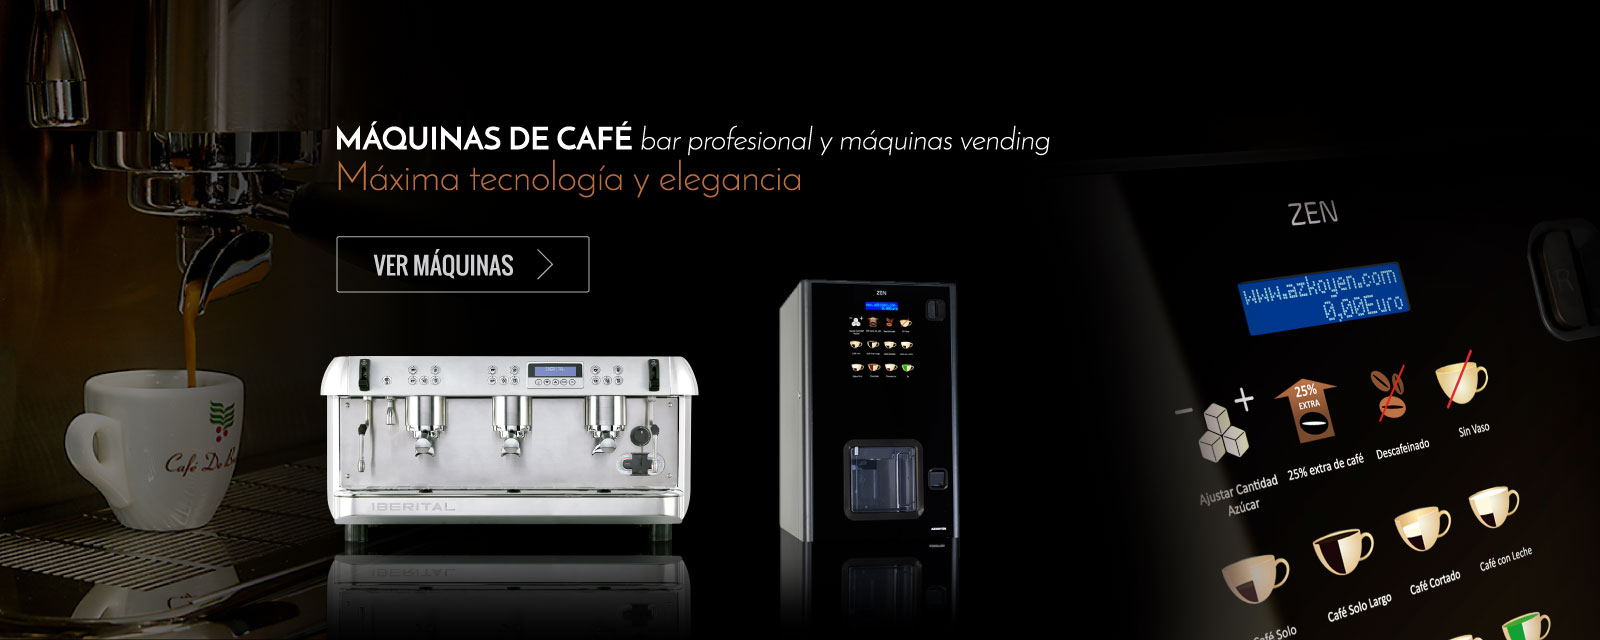 slide_maquinas_de_cafe-cafe-do-brasil